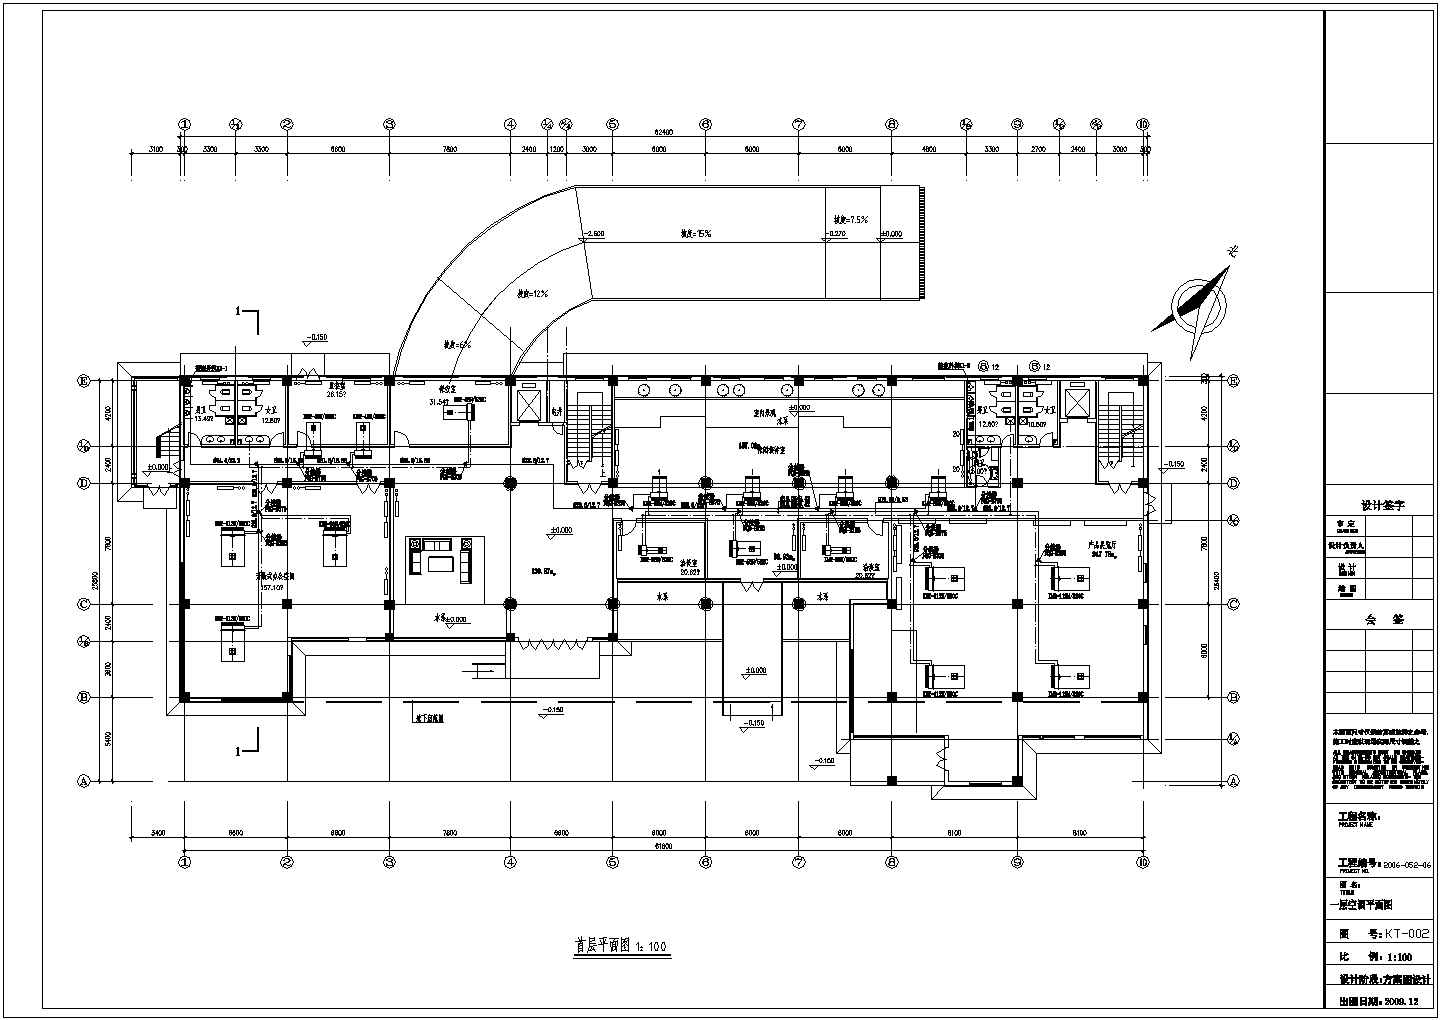 某五层办公楼VRV多联机空调系统设计图纸